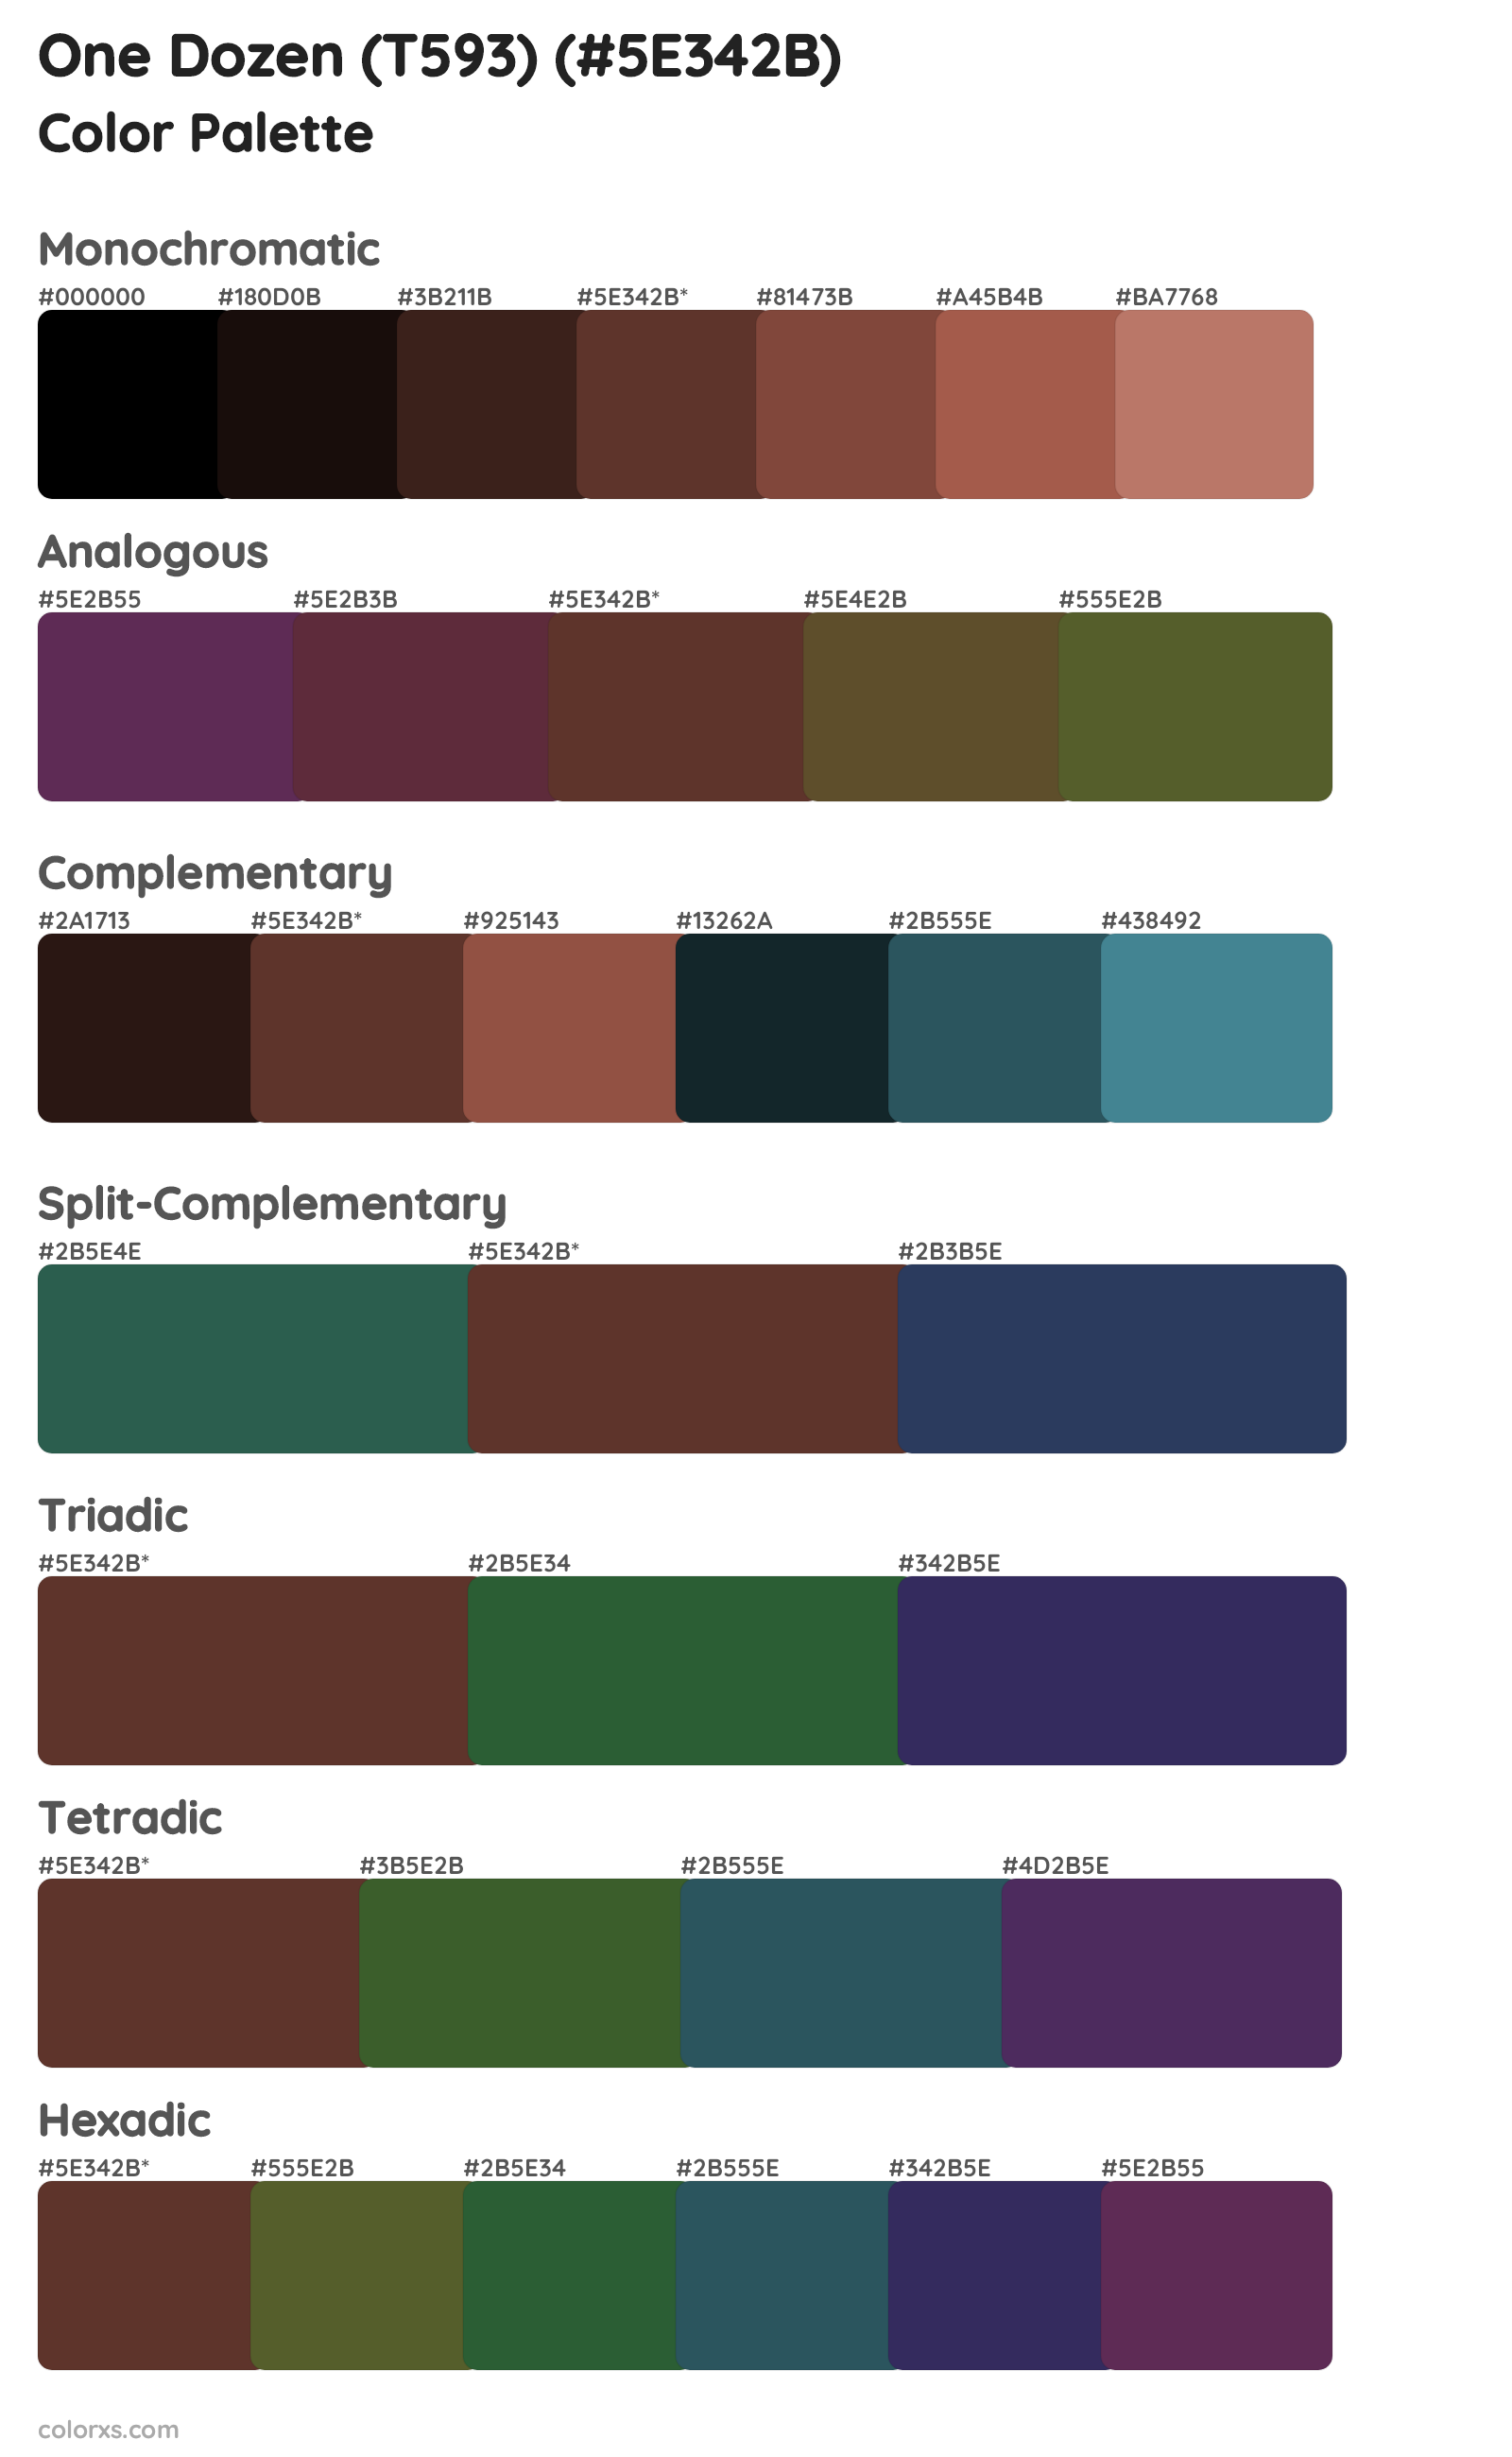 One Dozen (T593) Color Scheme Palettes